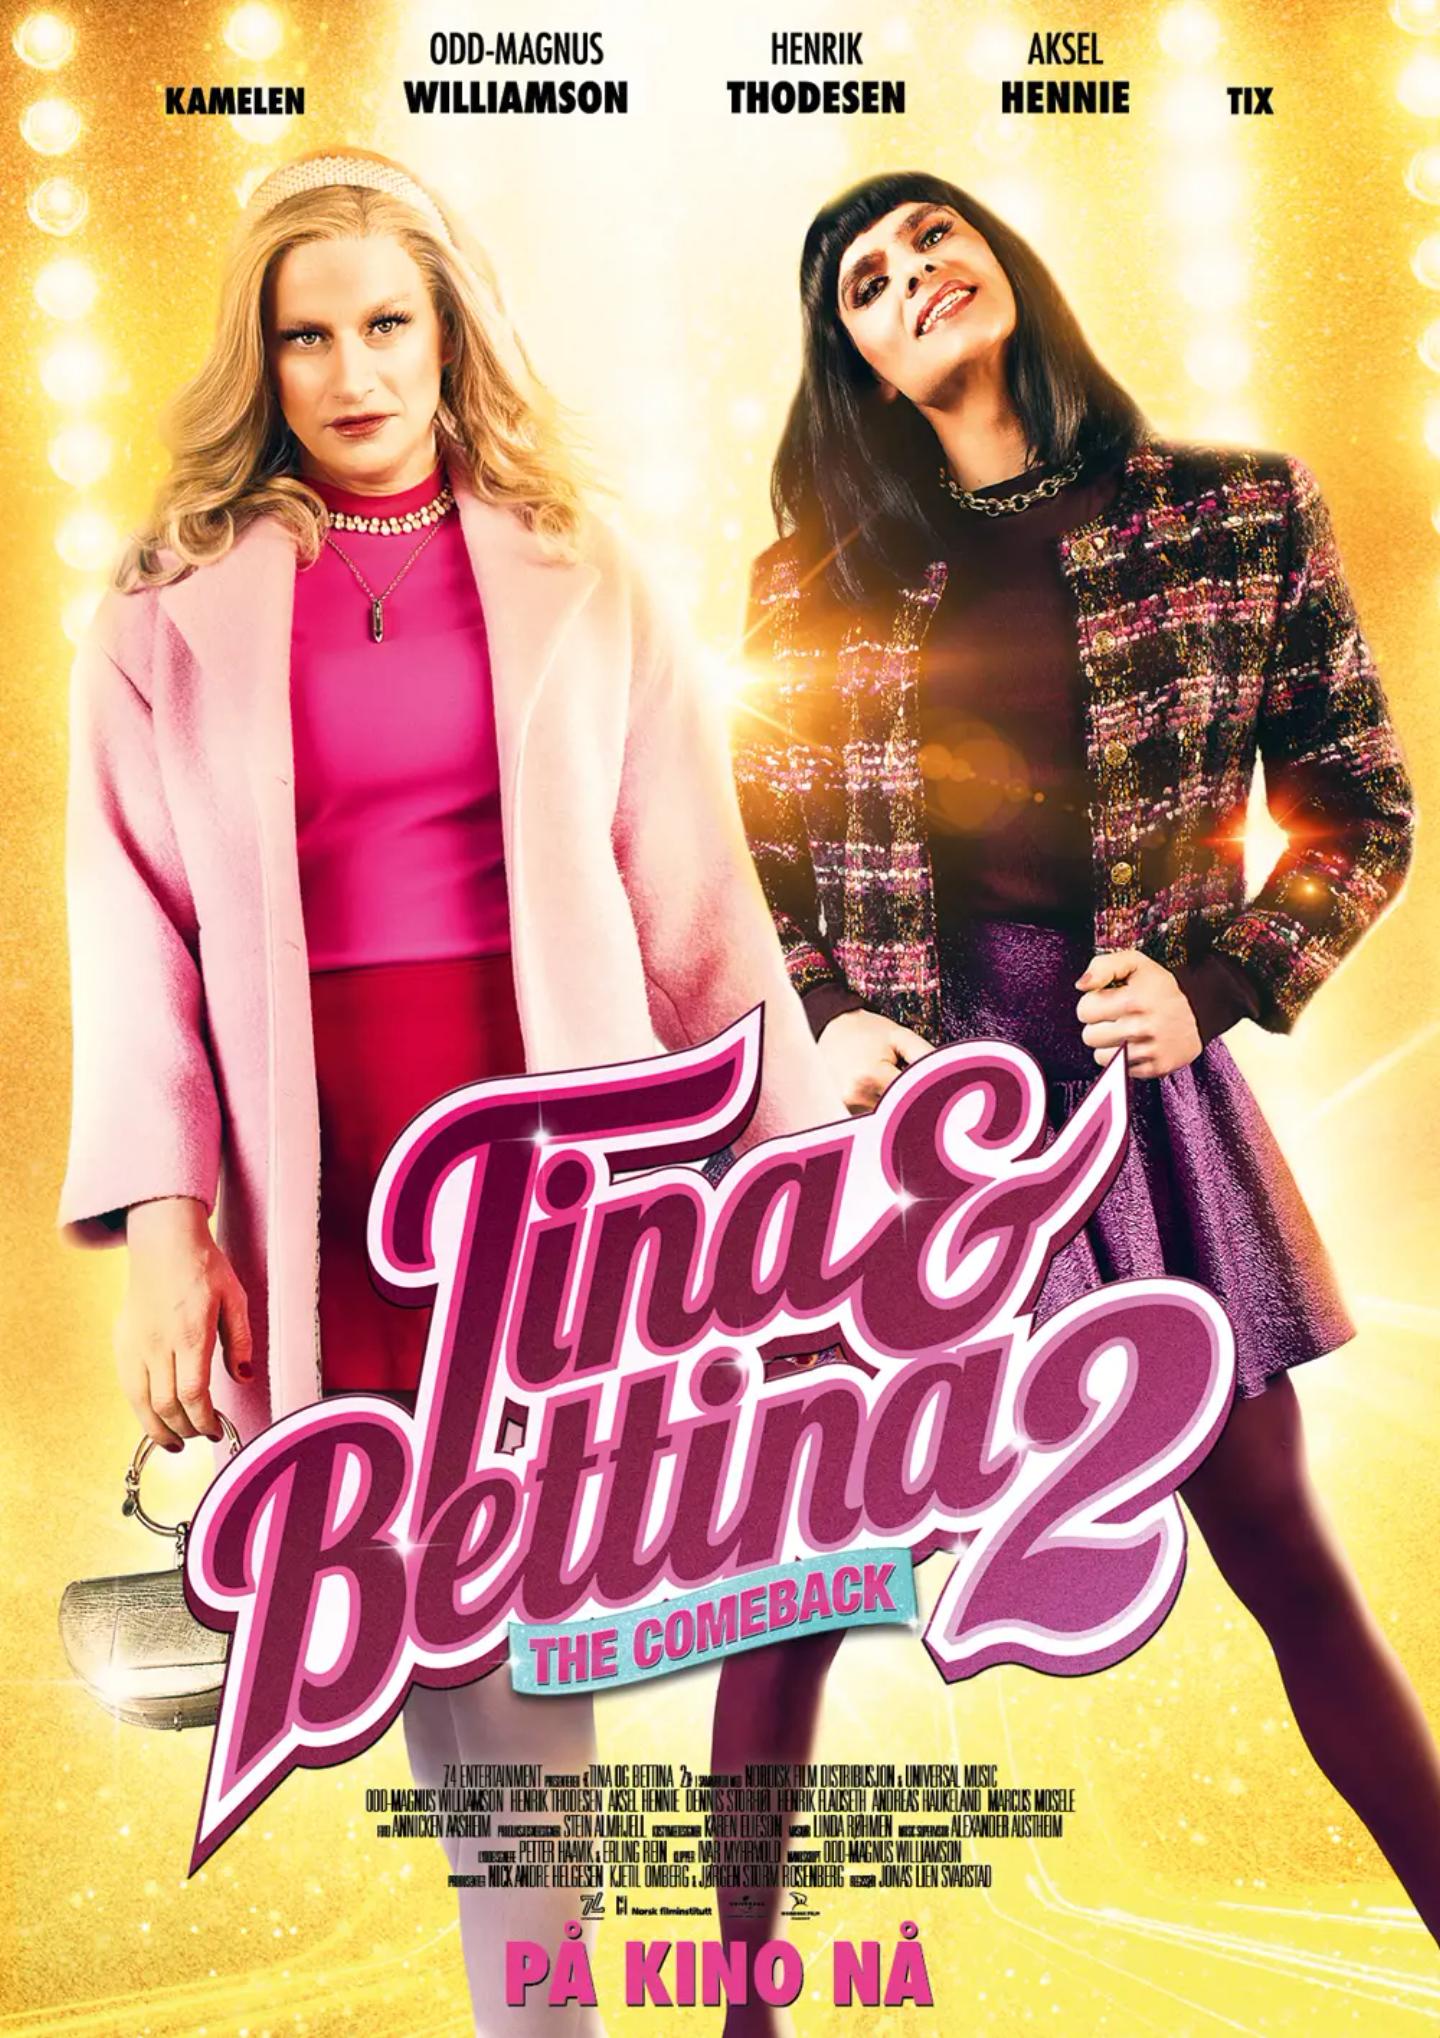 Plakat for 'Tina & Bettina 2 - The Comeback'